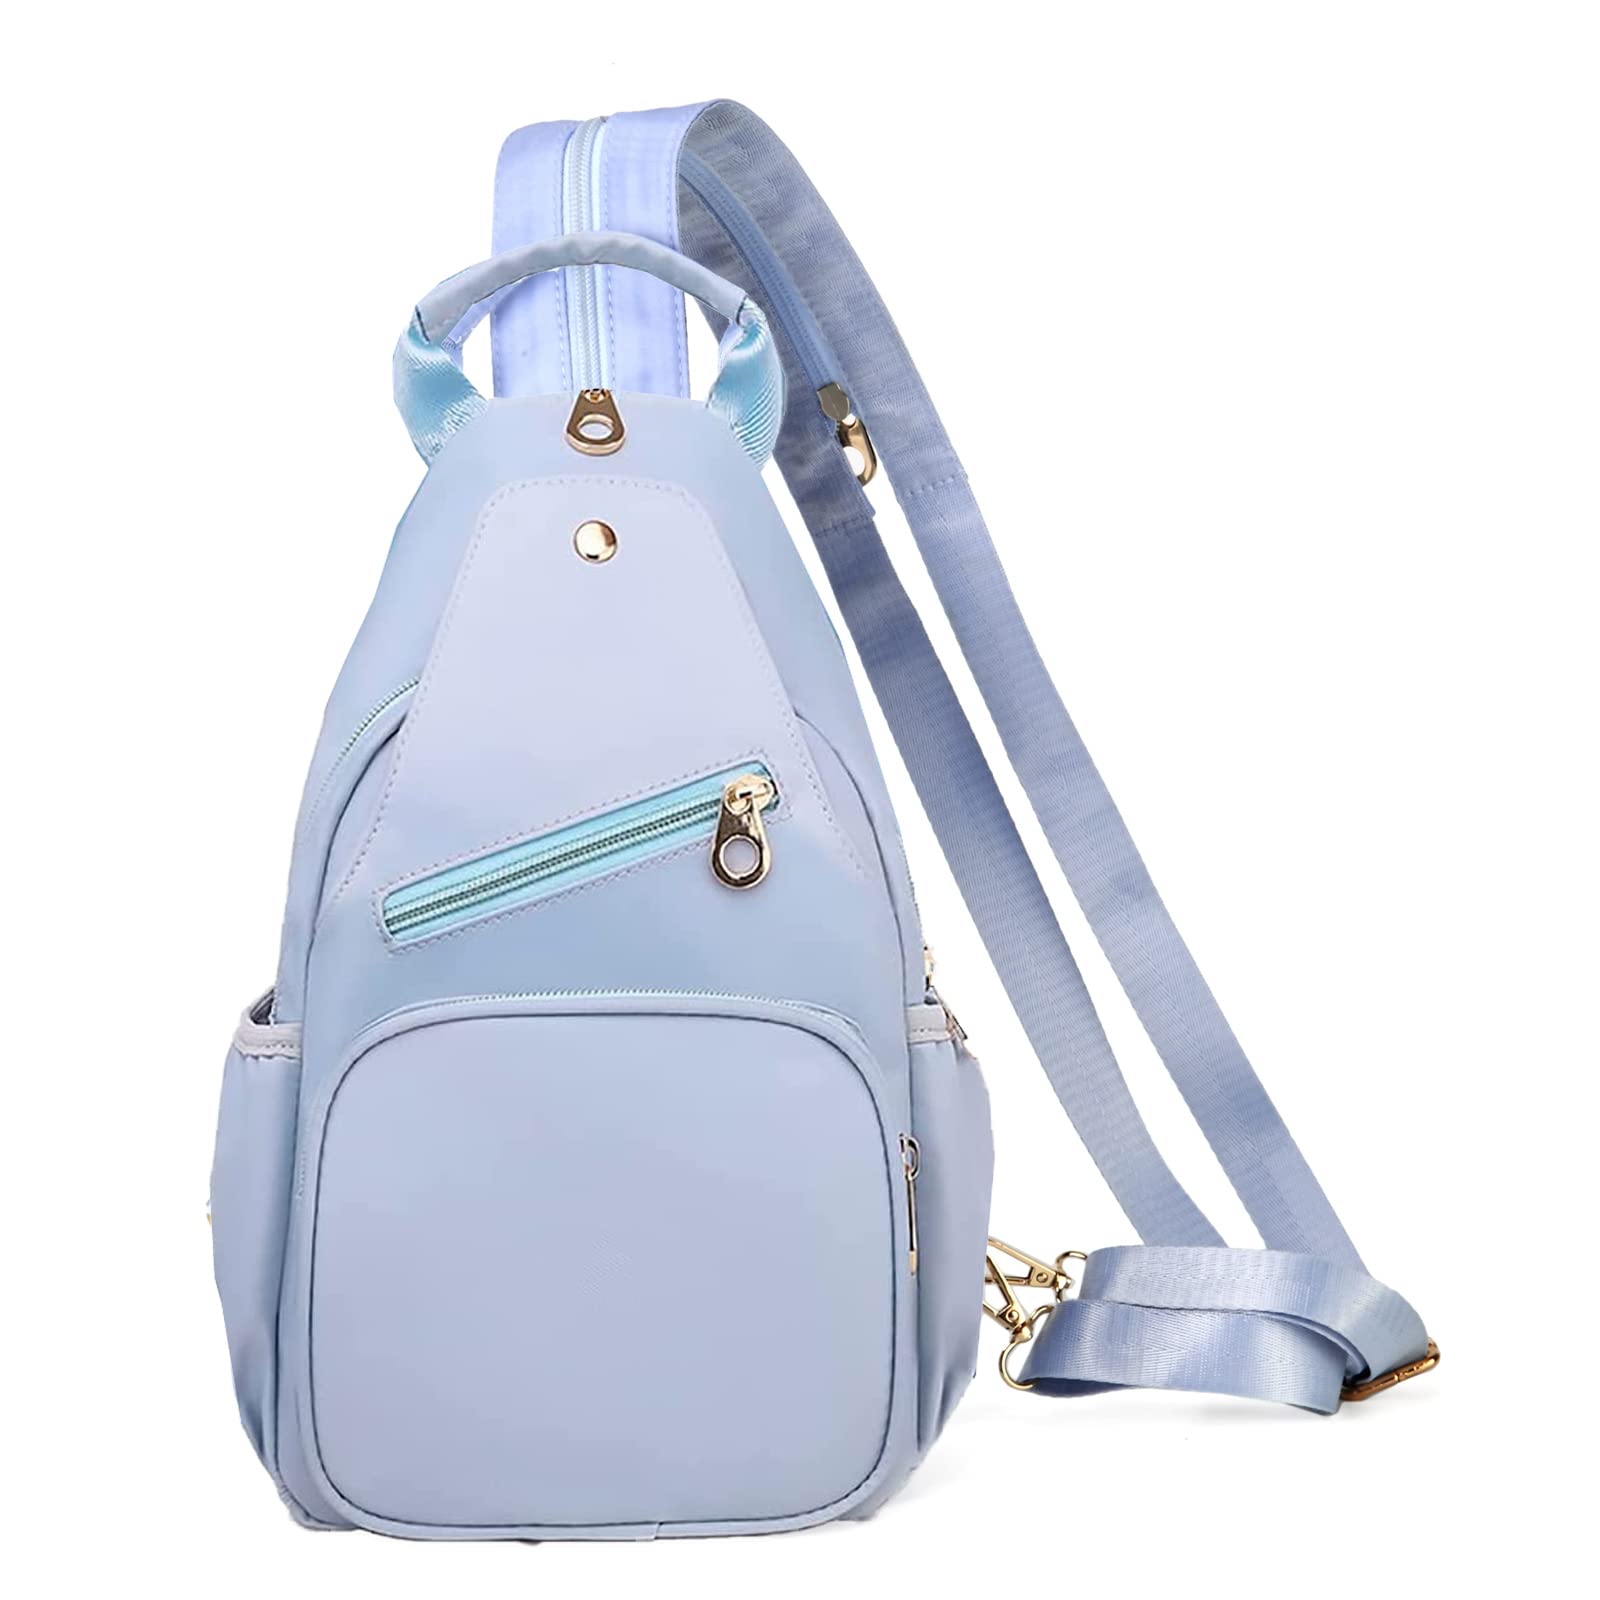 Small Sling Backpack for Women, Multi-Functional Sling Backpack Sling Bag for Travel Sports Running